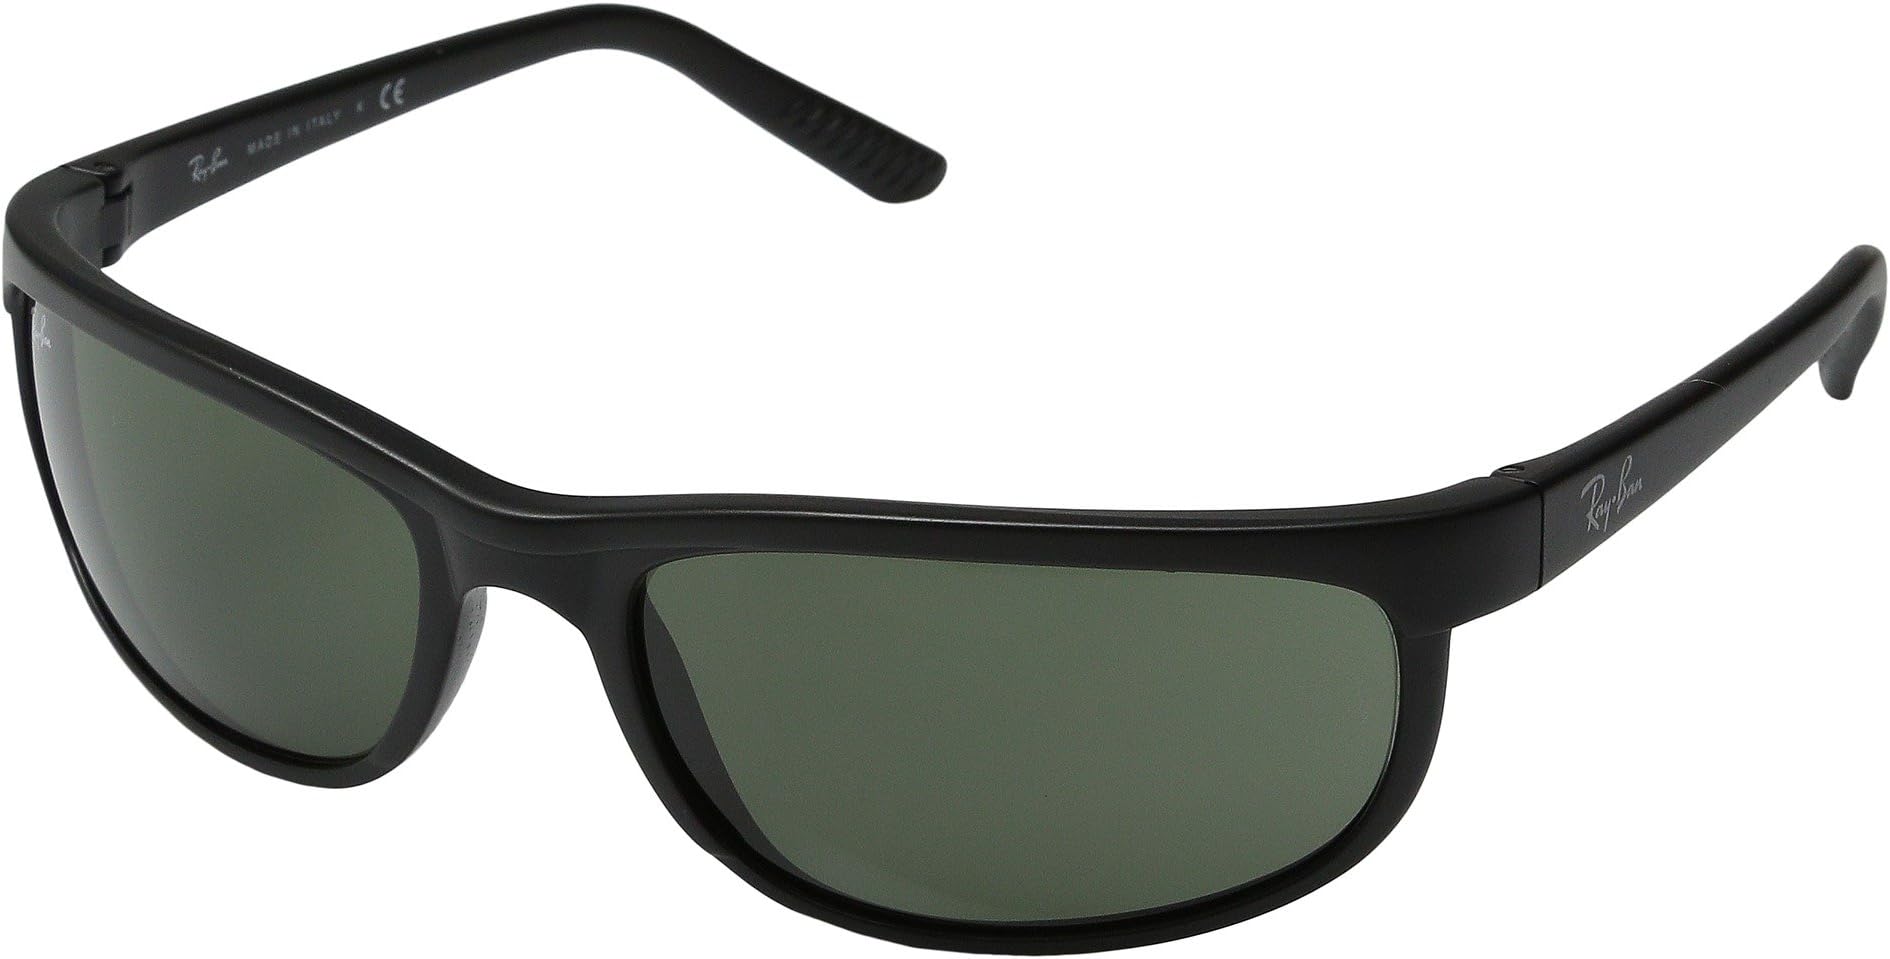 Солнцезащитные очки RB2027 Predator 2 Ray-Ban, цвет Matte Black/G-15xlt Lens